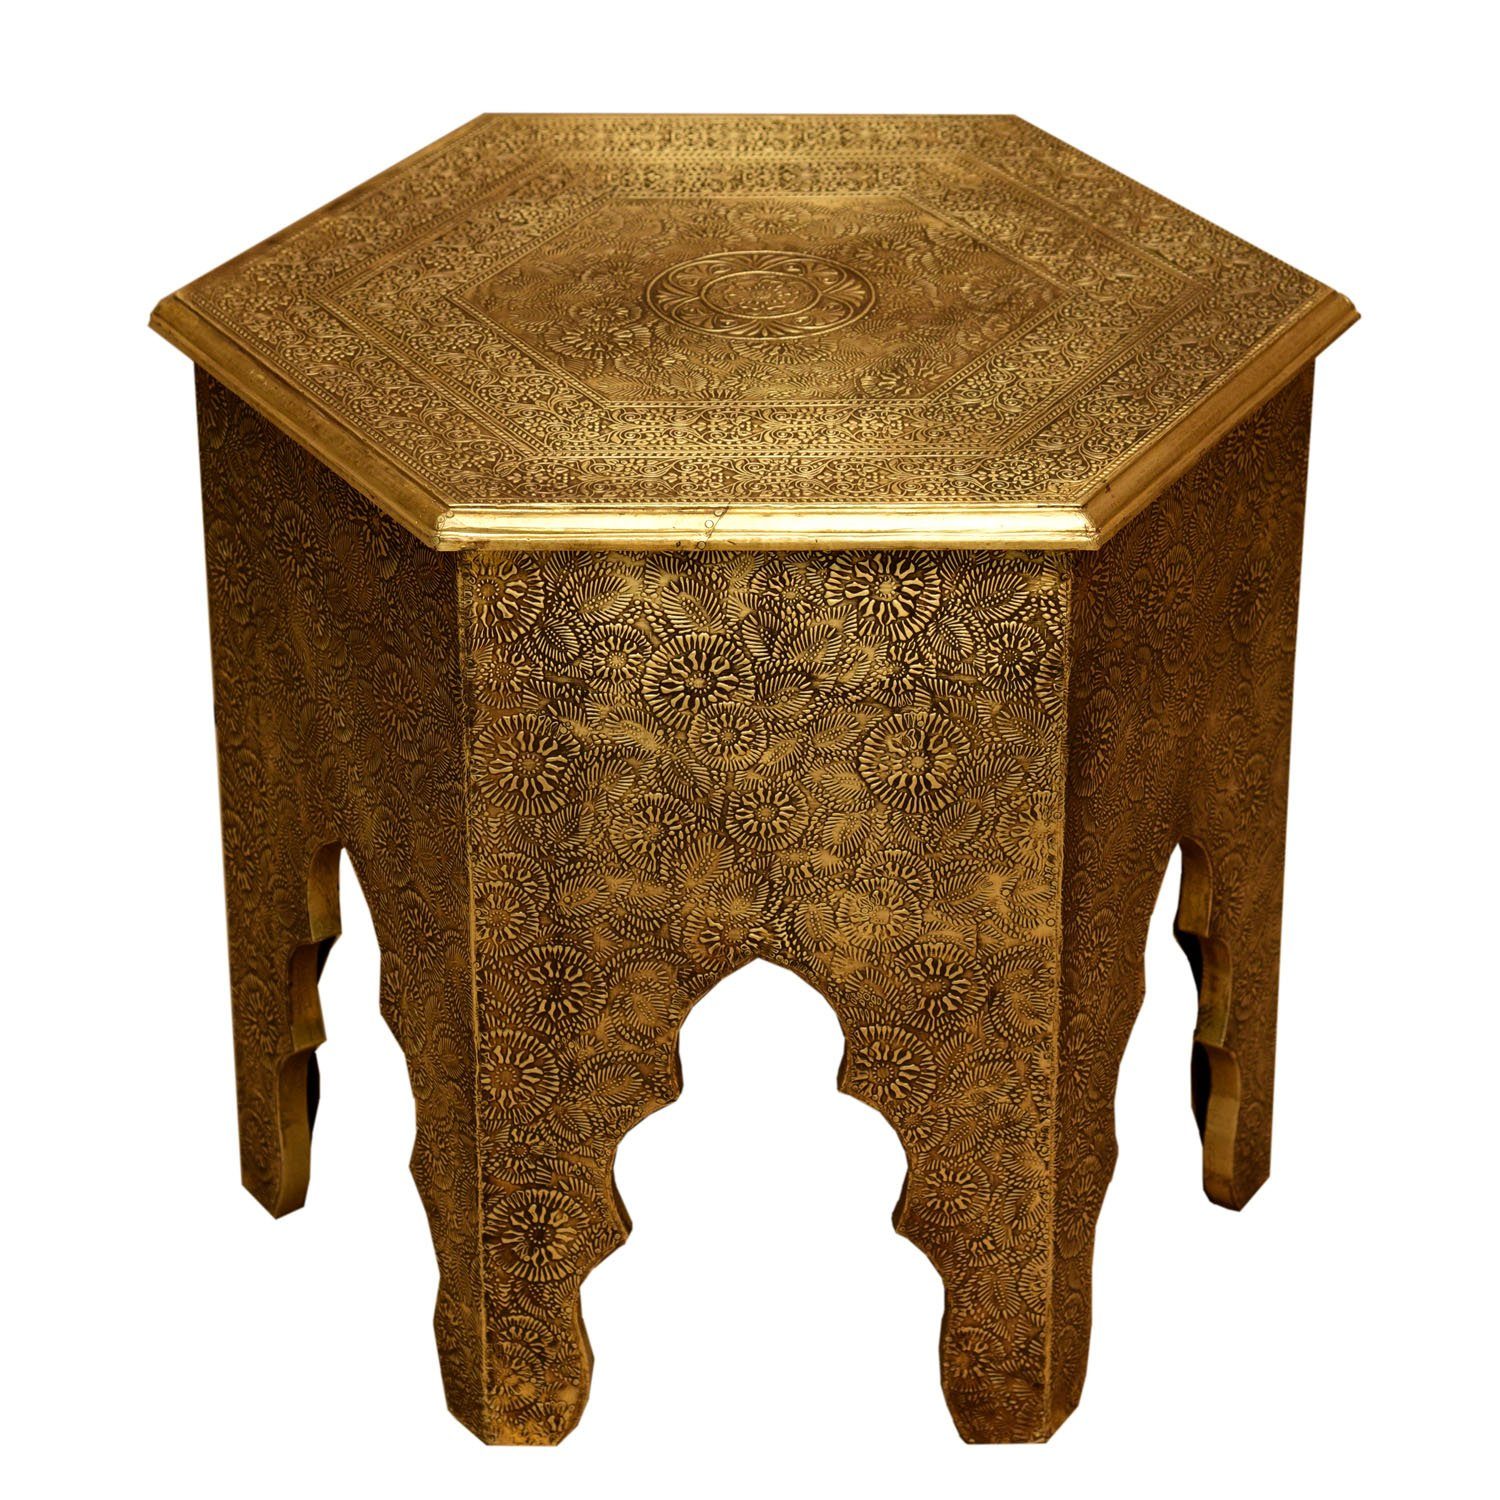 Casa Moro Messingintarsien (Holz Look sechseckig Höhe 46cm in Couchtisch Ø mit Targa Antik marokkanischer verkleidet), komplett Gold Tisch Beistelltisch Orientalischer Sofatisch